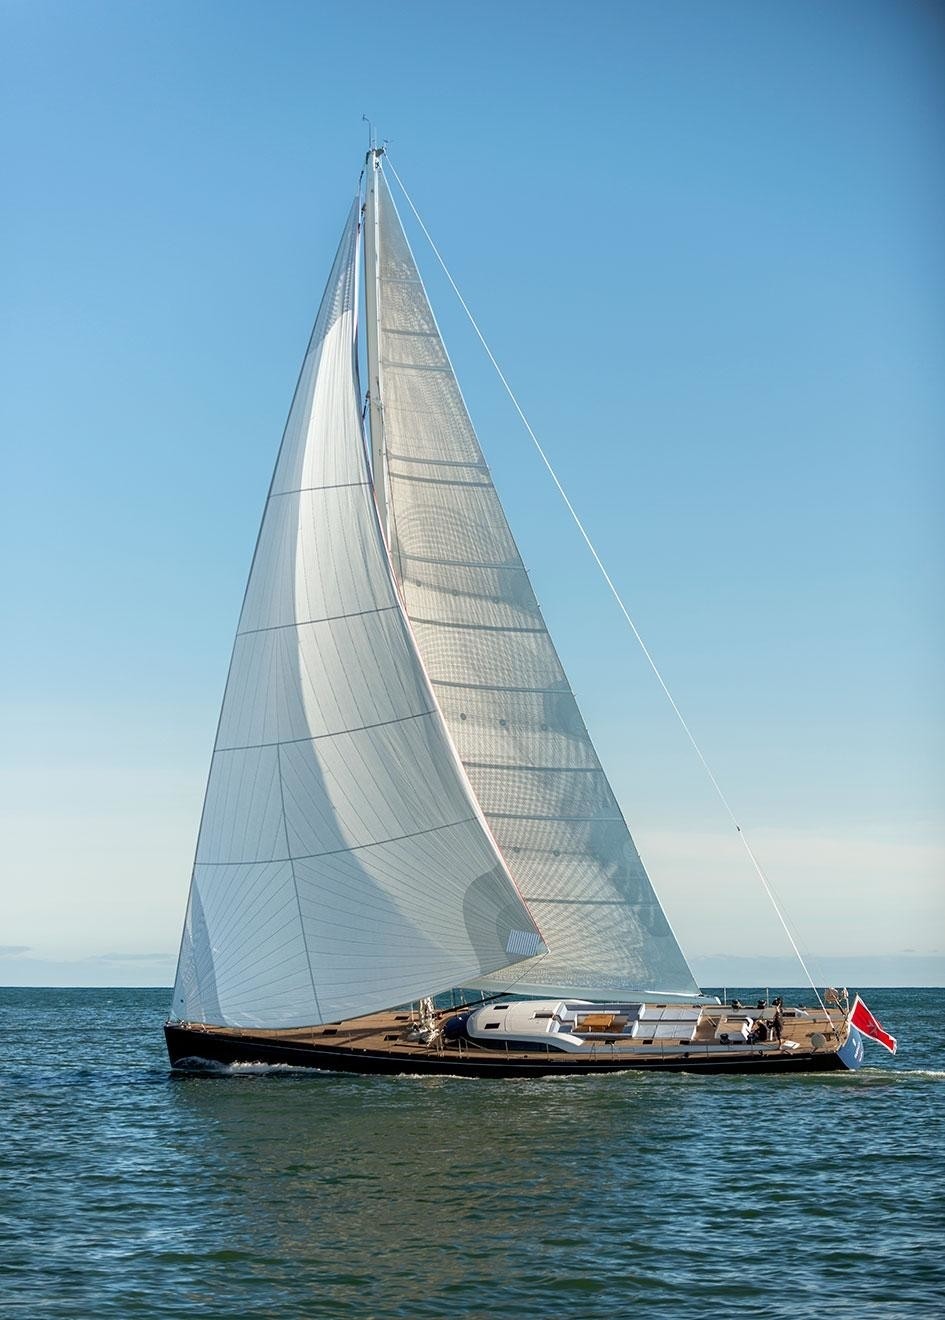 The 32m Yacht FARFALLA